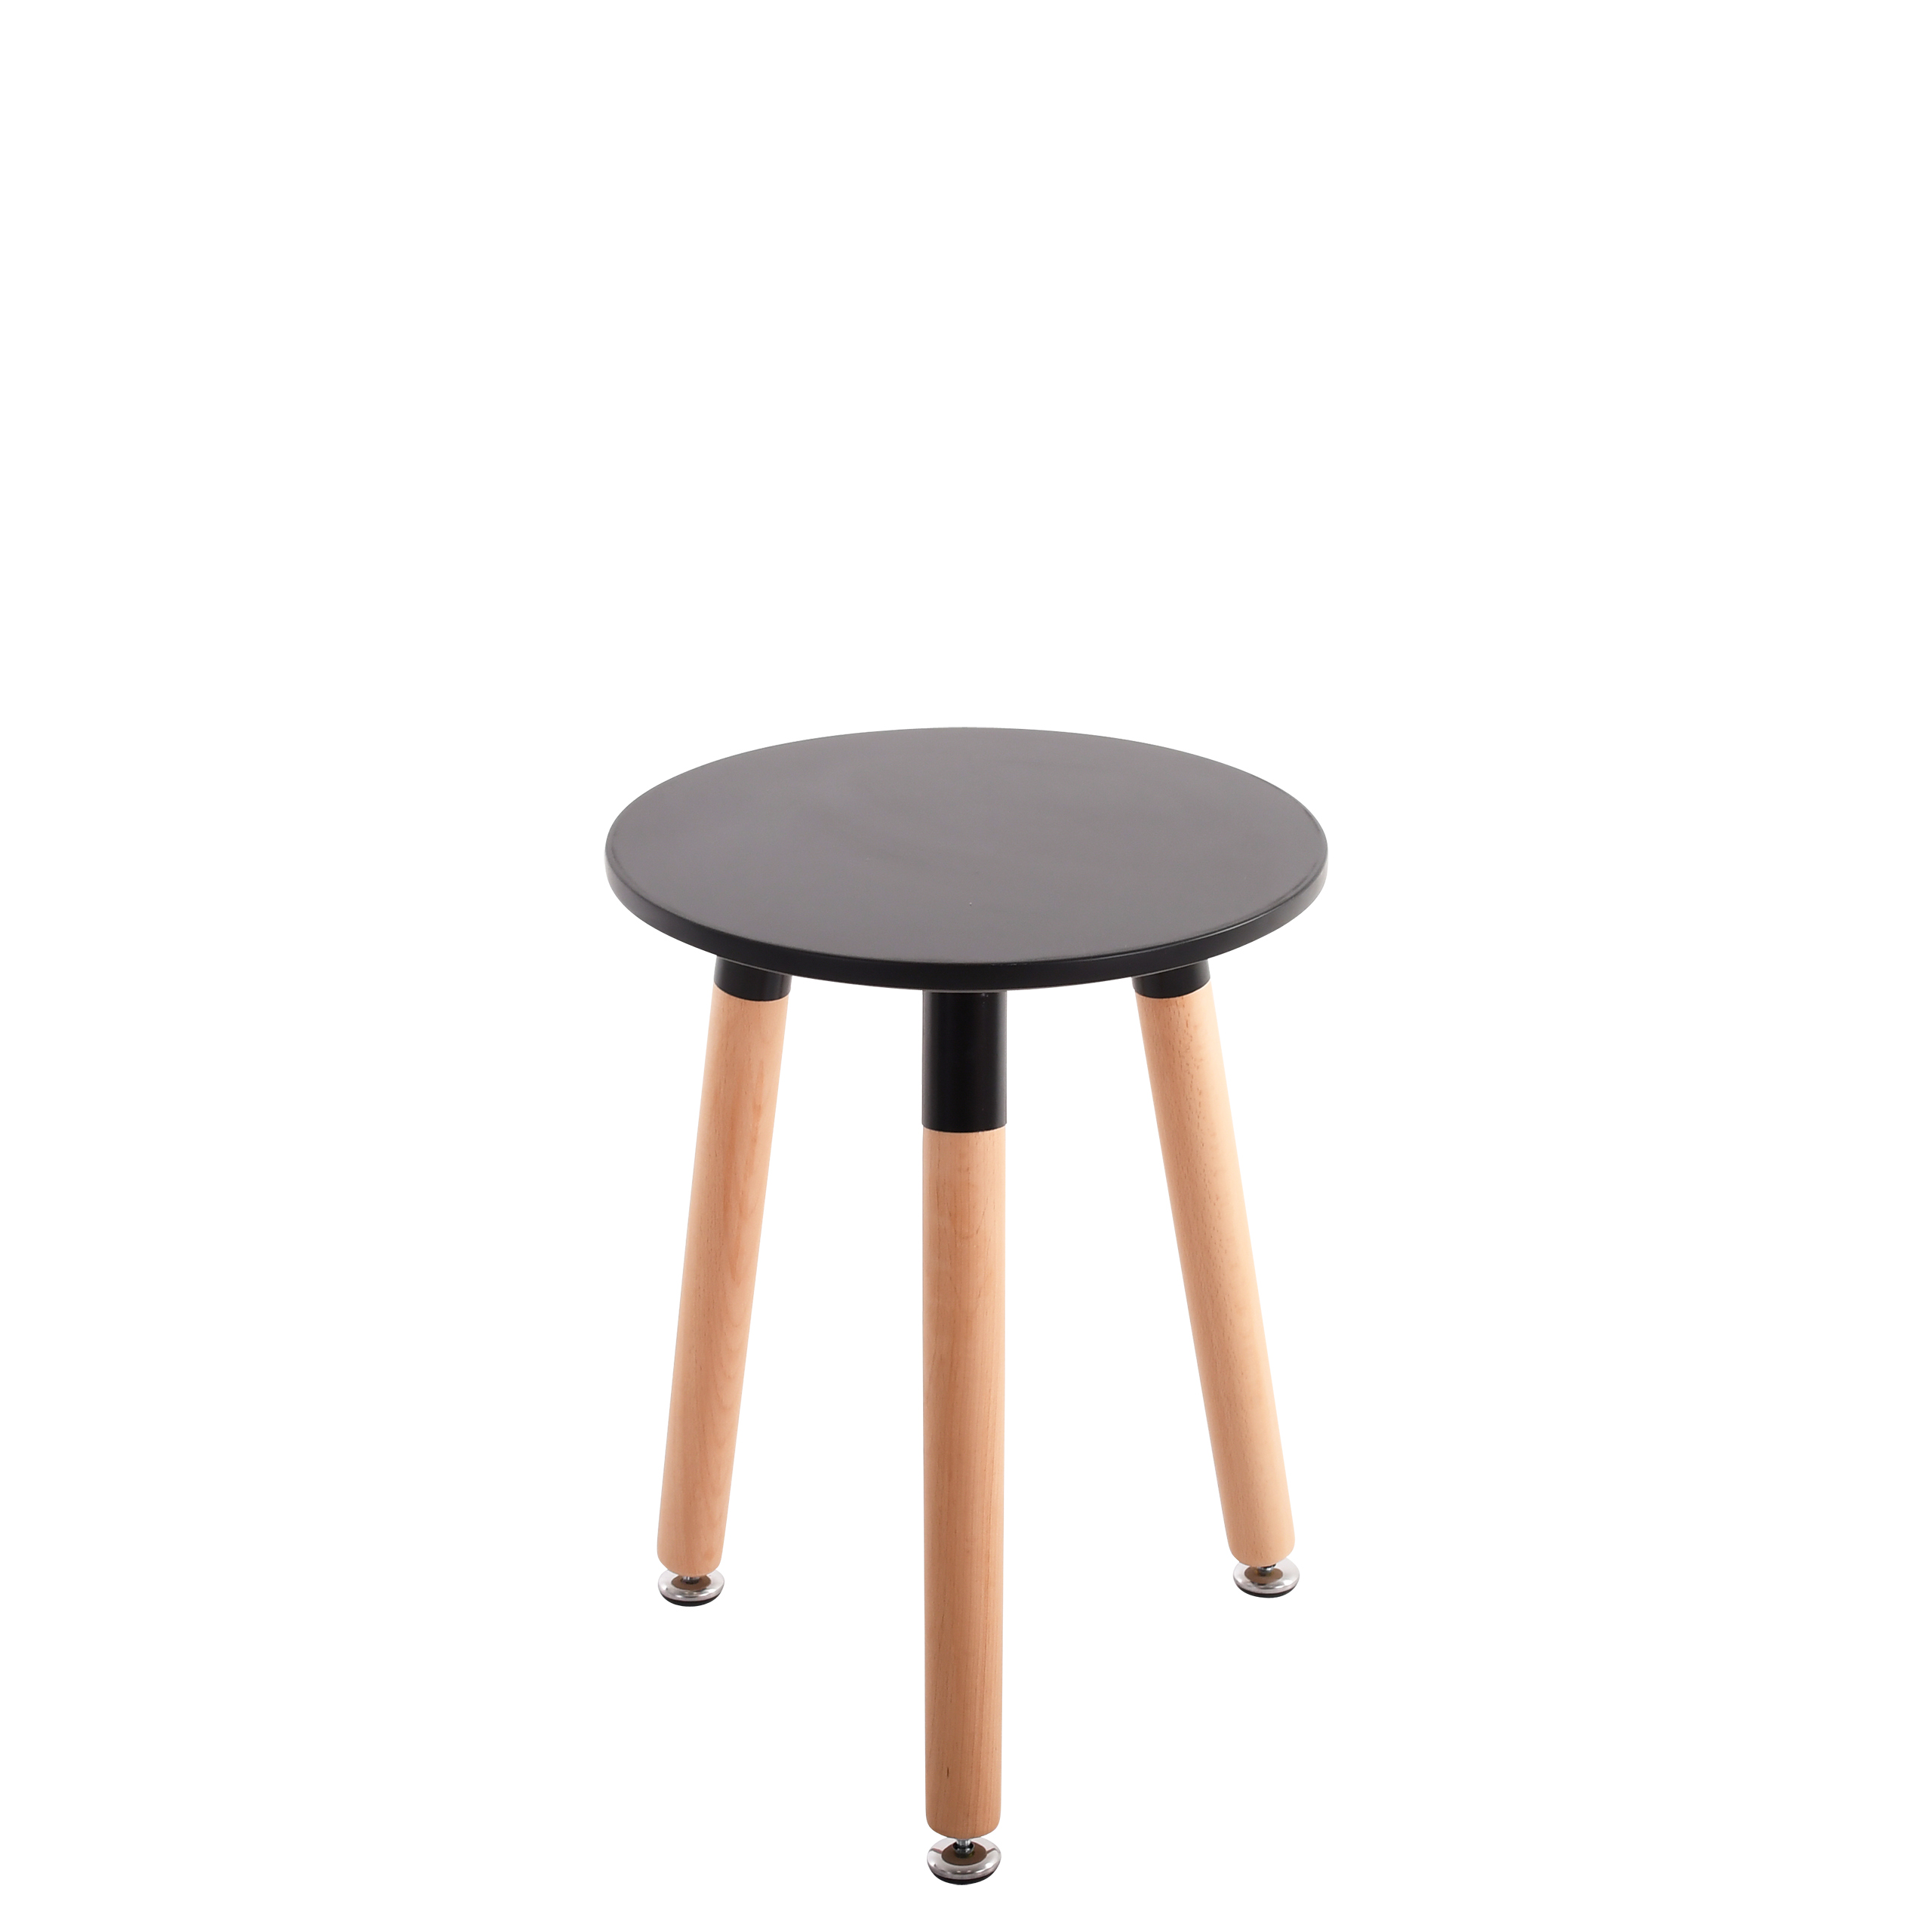 Raburg Beistell-Tisch Smilla extra klein, Seiden-Schwarz, 46,5 cm hoch, 35 cm Durchmesser,  Buche